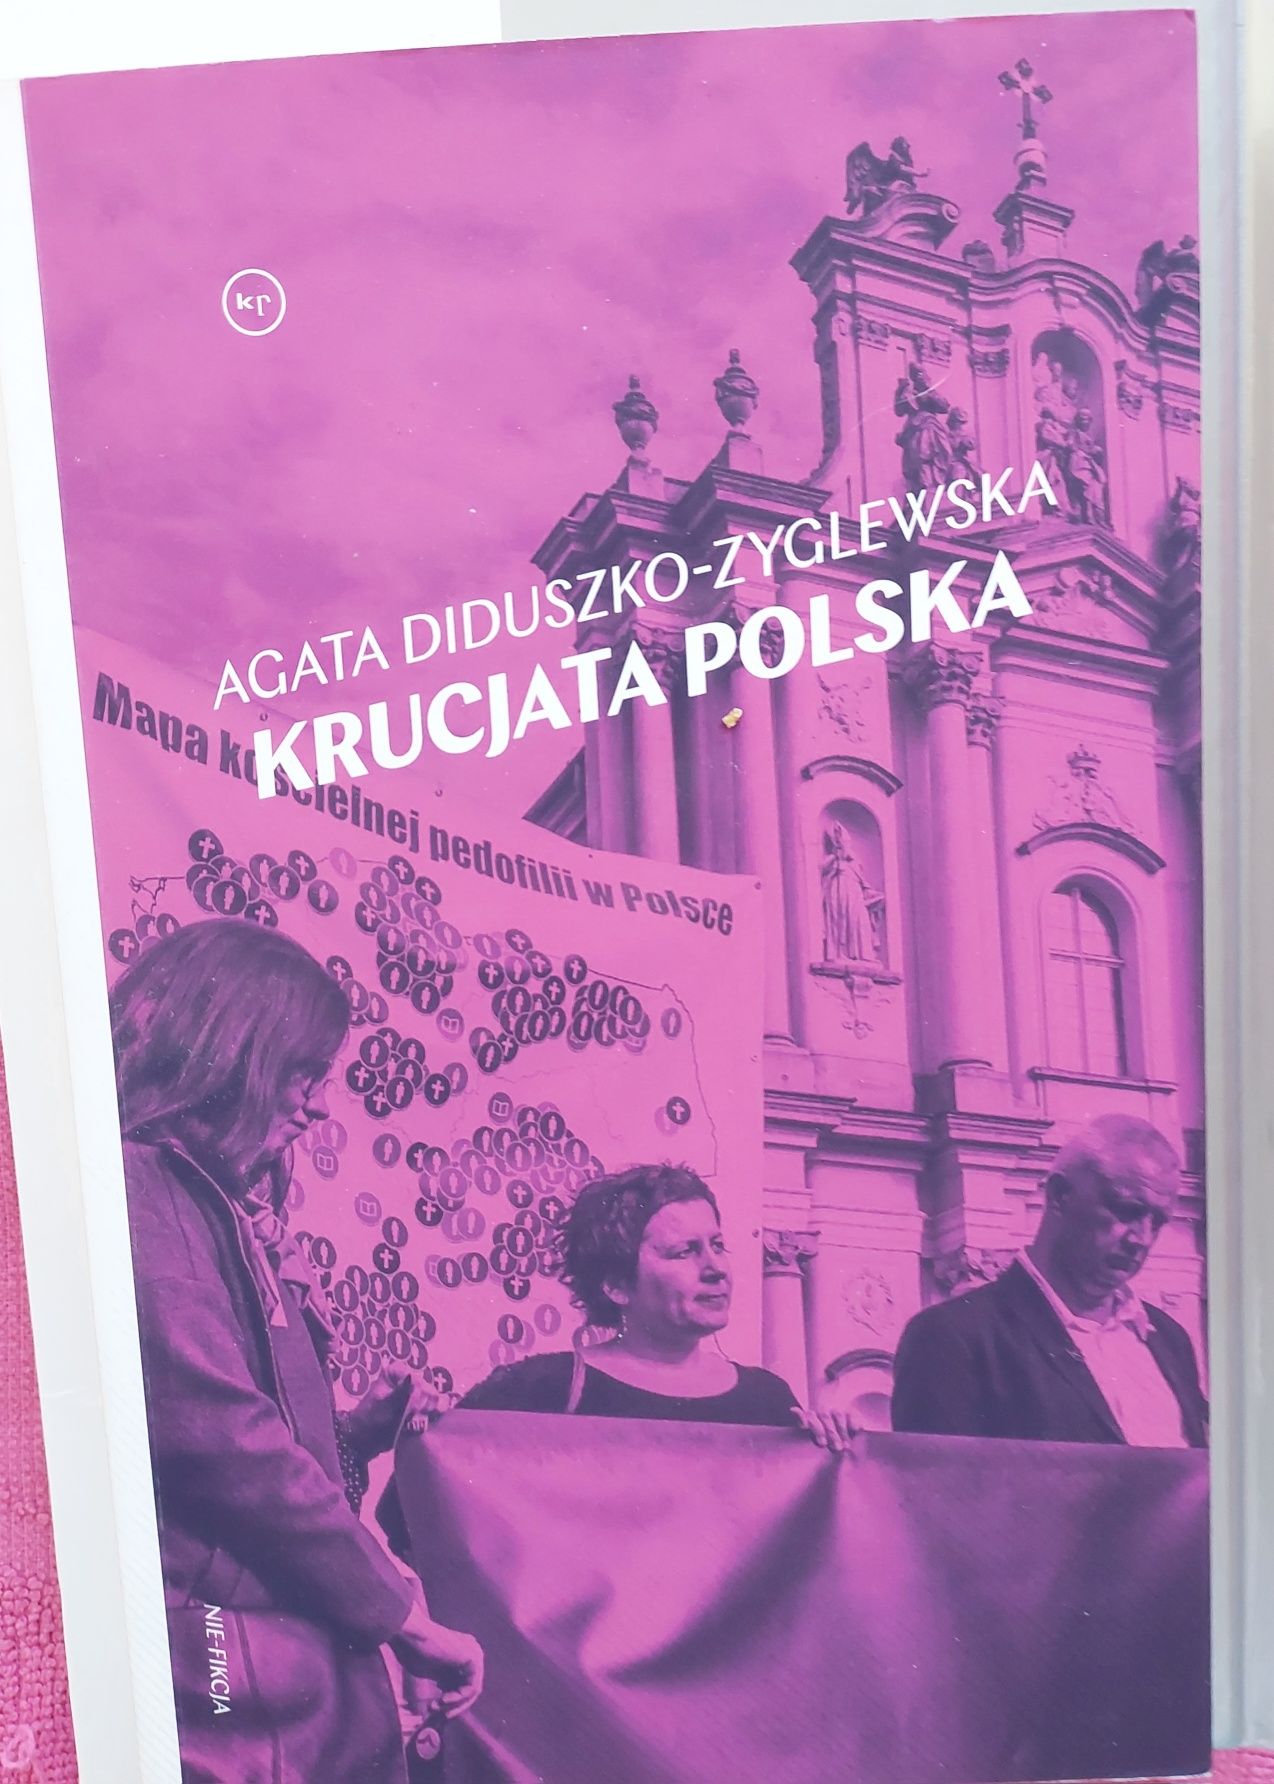 Krucjata polska książka A. Diduszko-Zyglewskiej